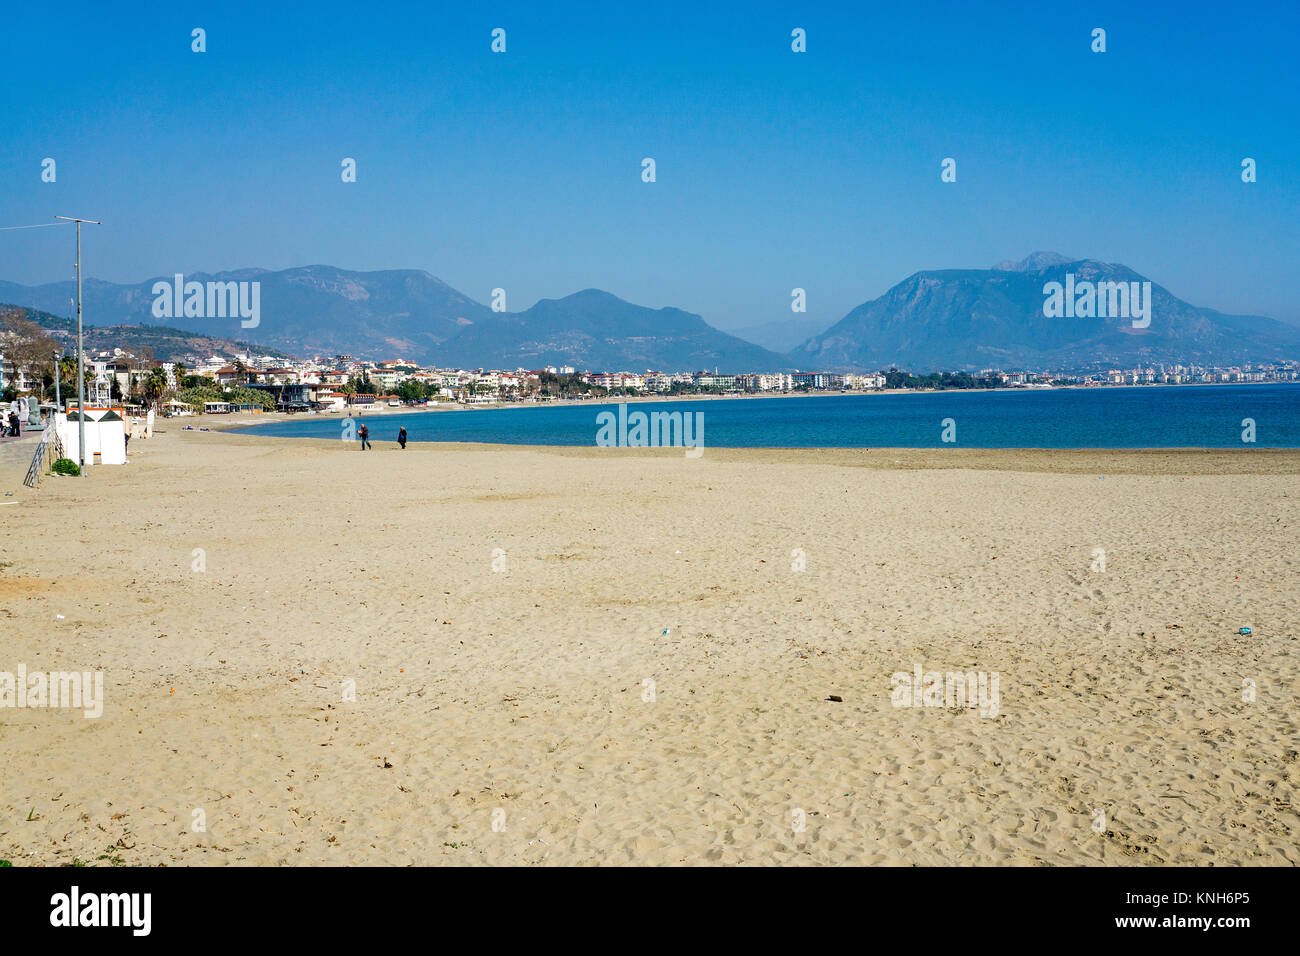 Spiaggia di Alanya, dietro le montagne del taurus, riviera turca, Turchia Foto Stock